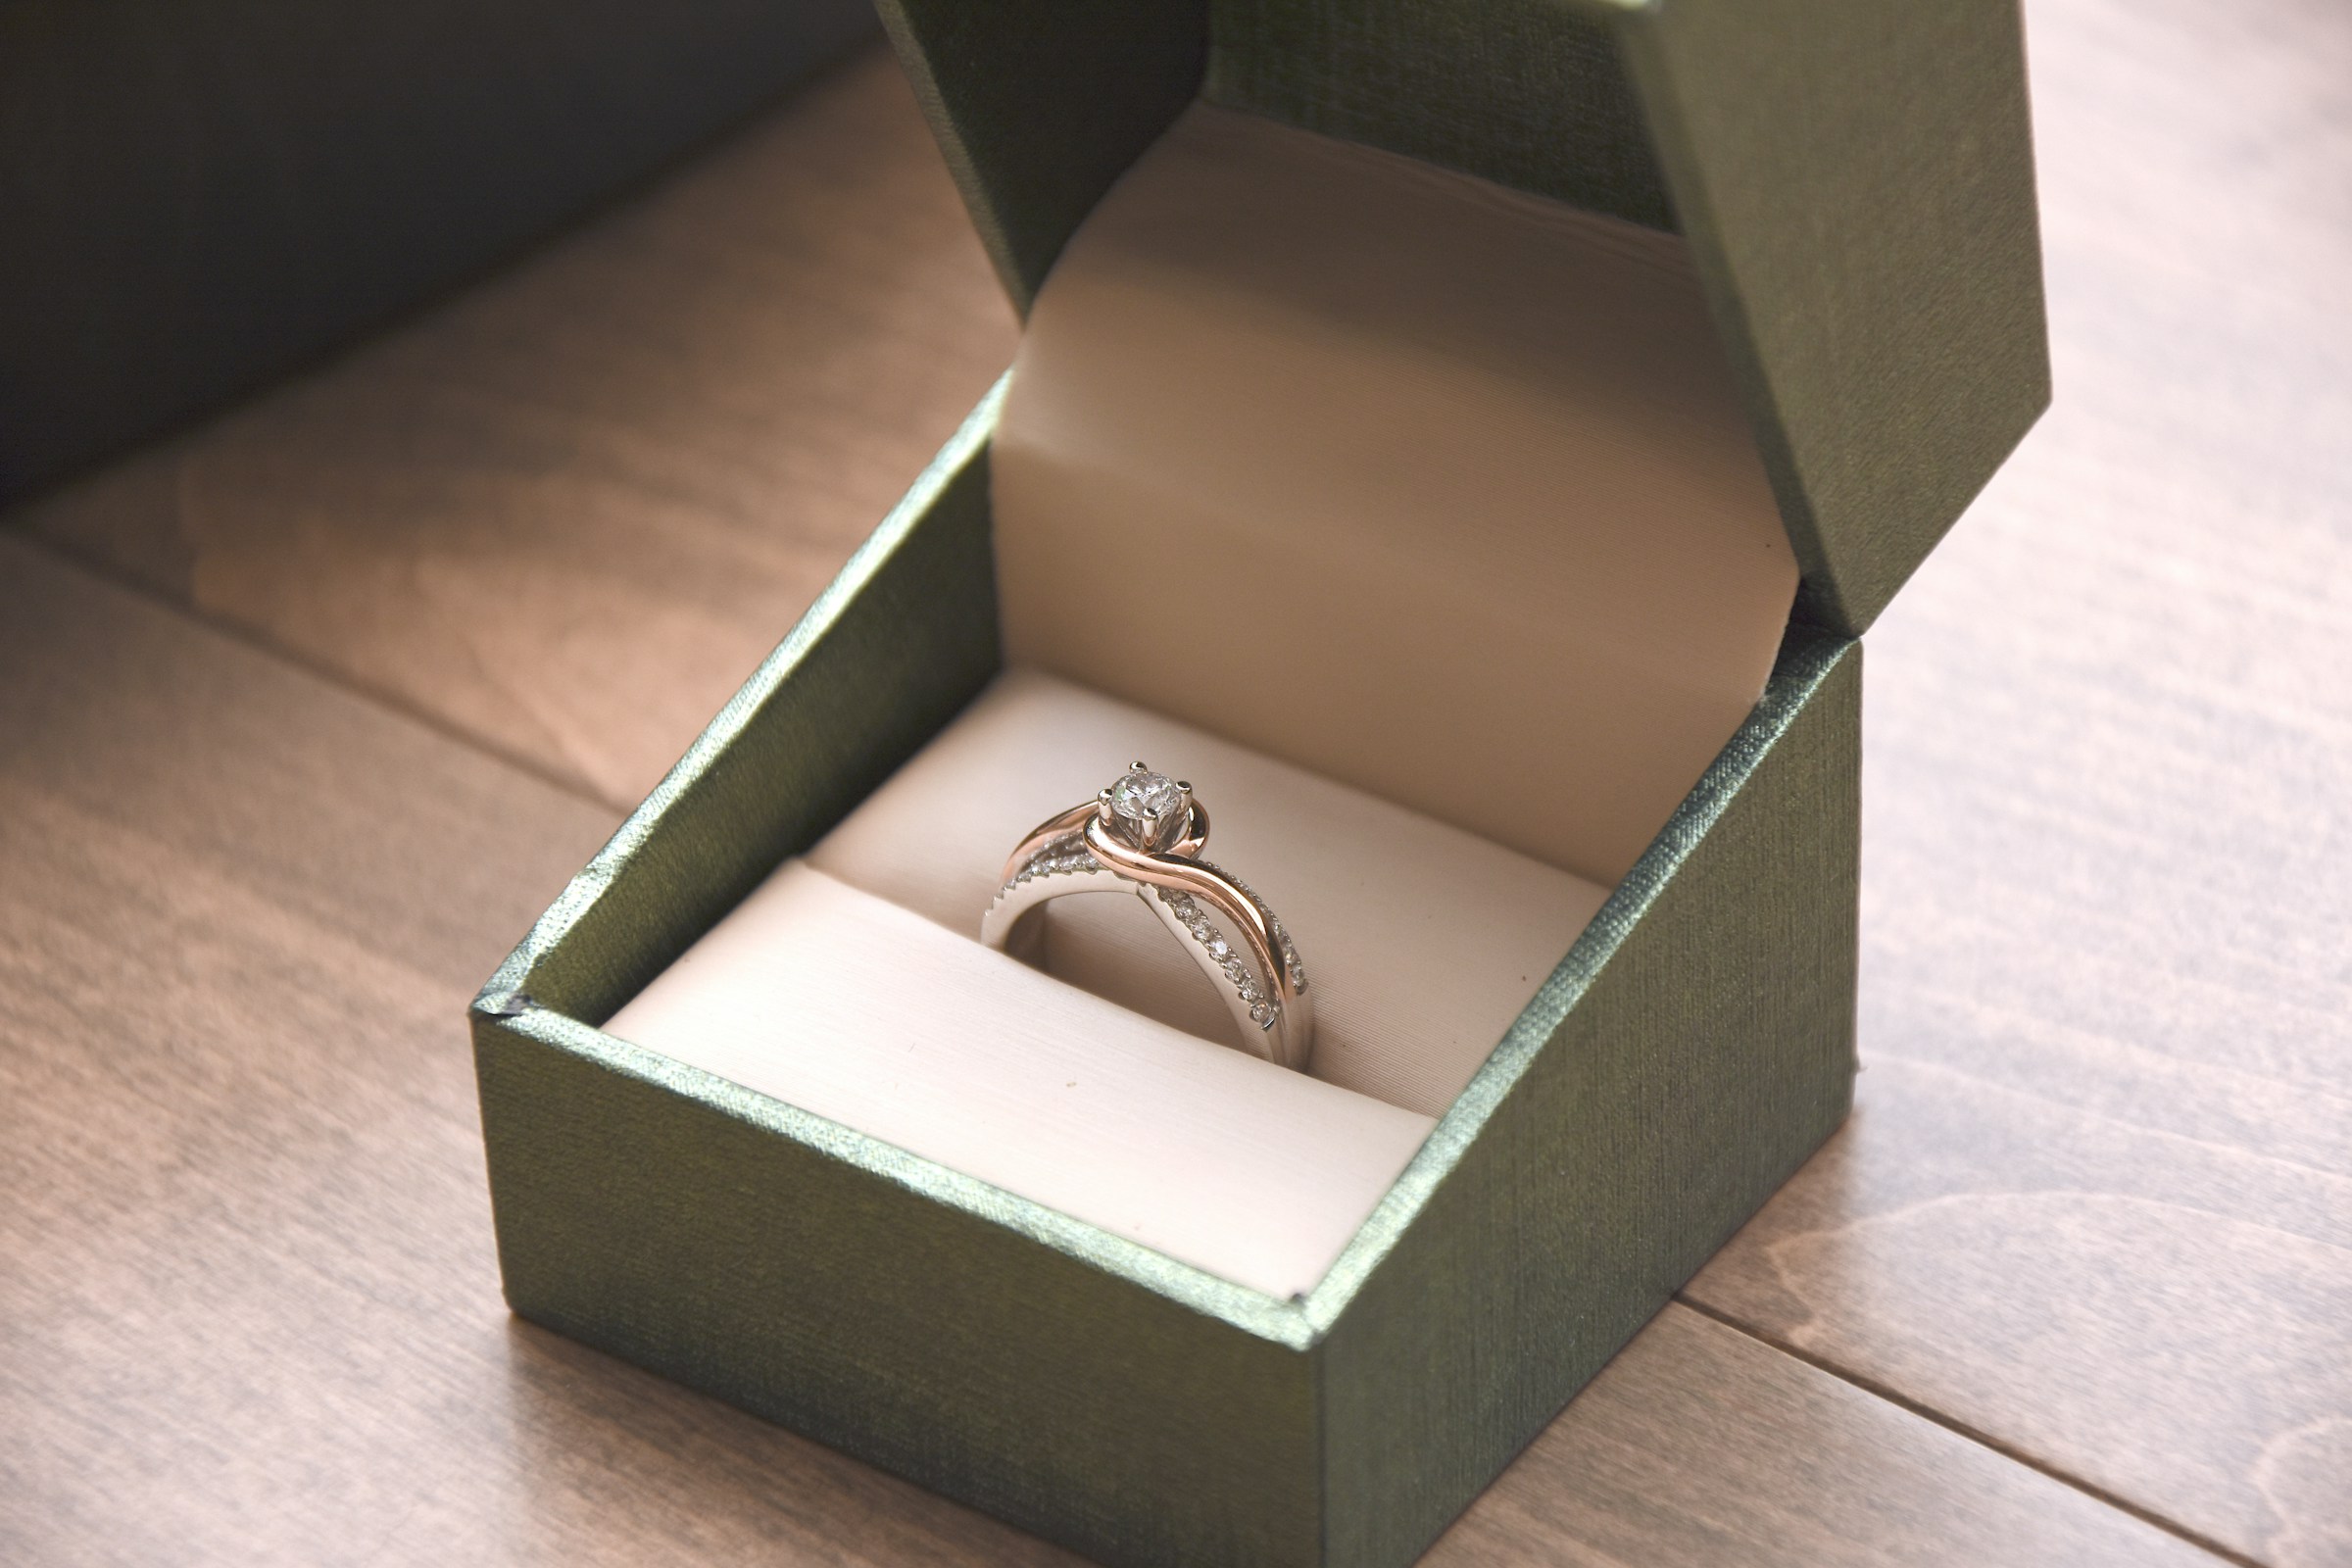 Ein silberner Ring in einer Schachtel | Quelle: Unsplash